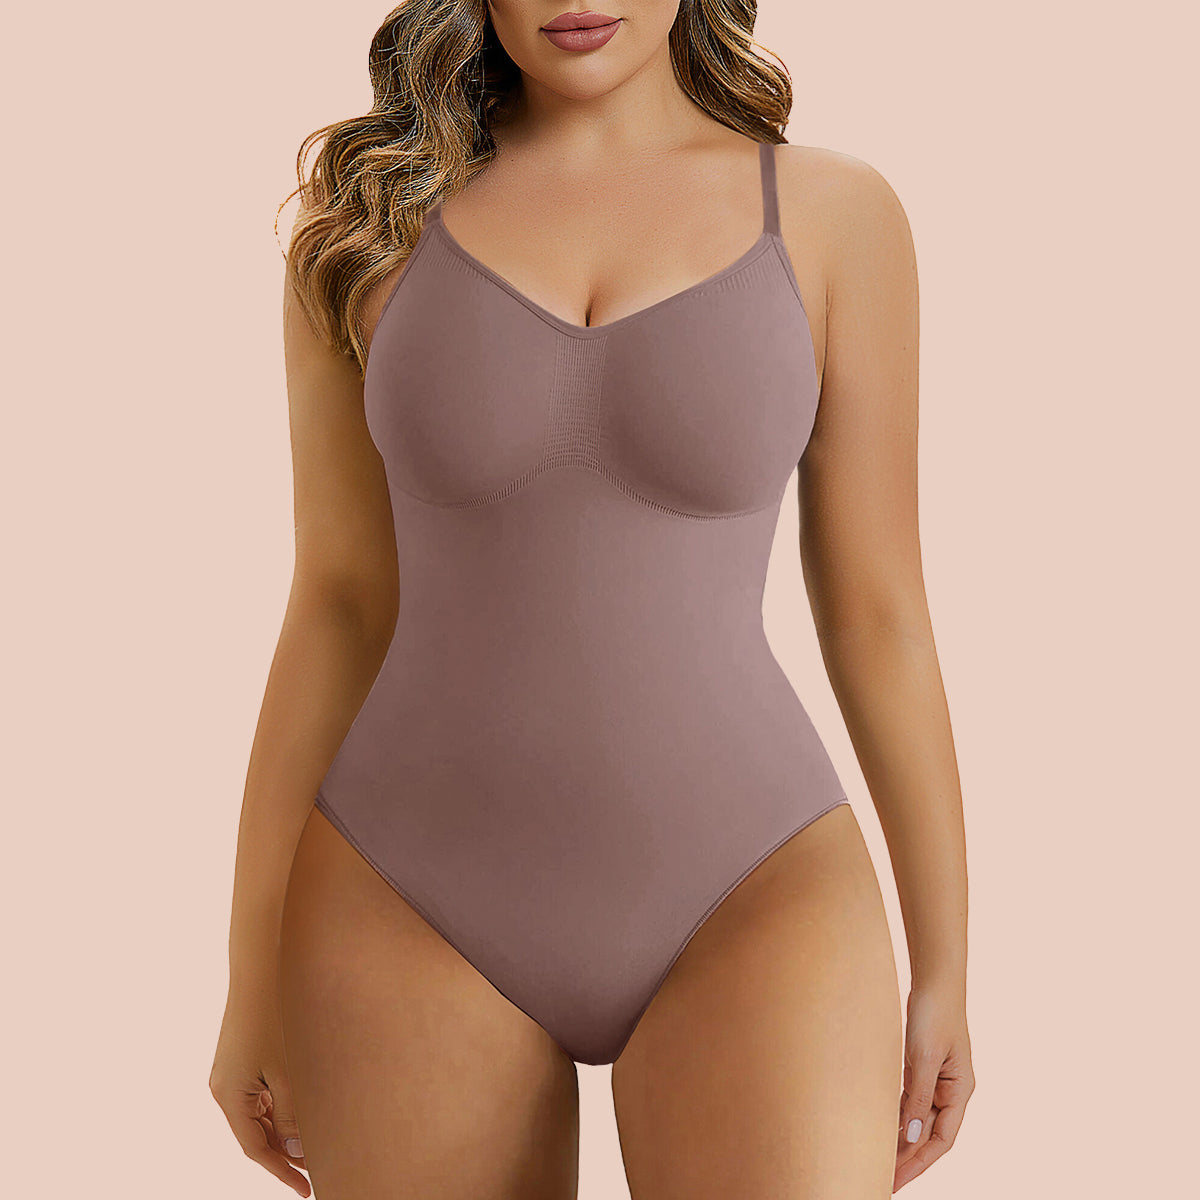 Buy Xnova Women Shapewear Tummy Control Sculpting Bodysuit, Body